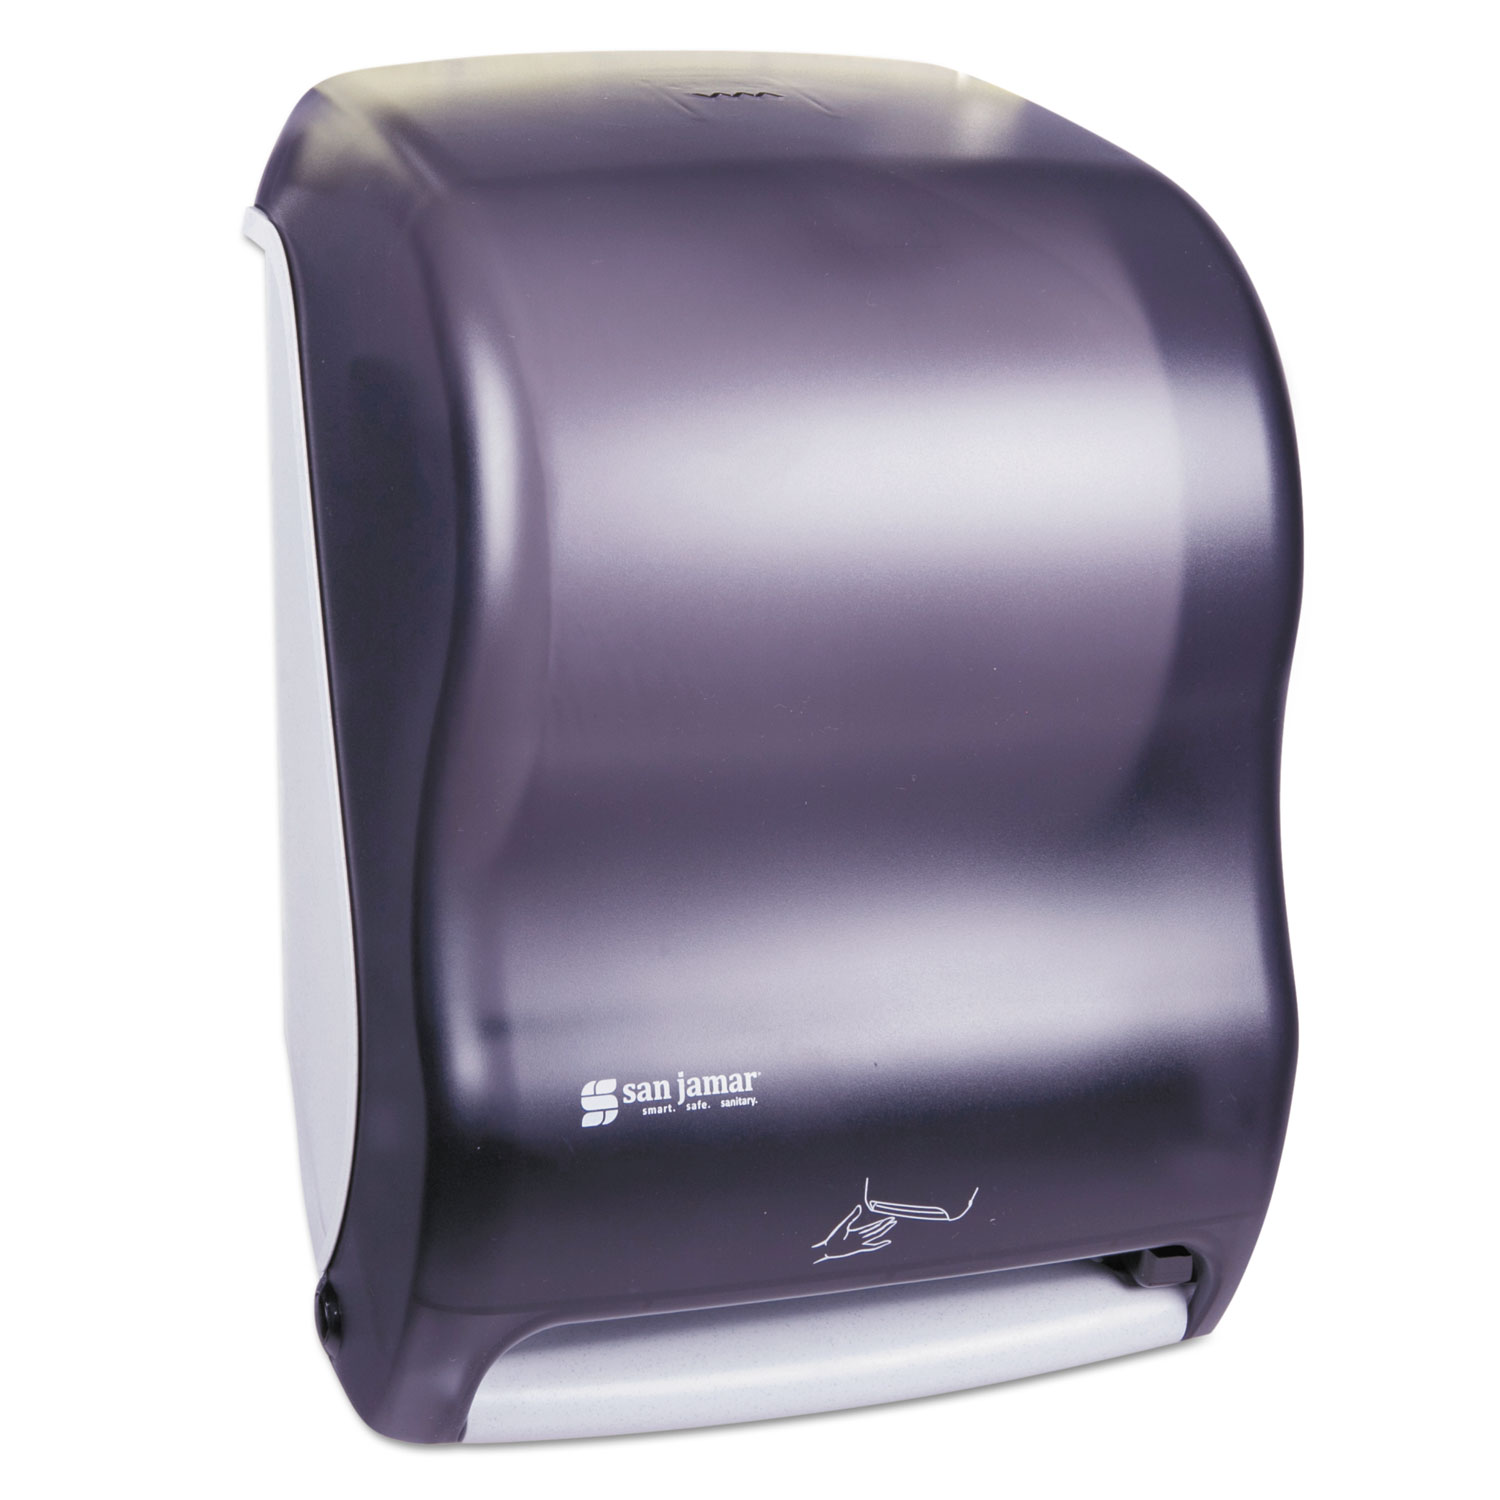 Smart System with iQ Sensor Towel Dispenser, 11 3/4 x 9 x 15 1/2, Black Pearl